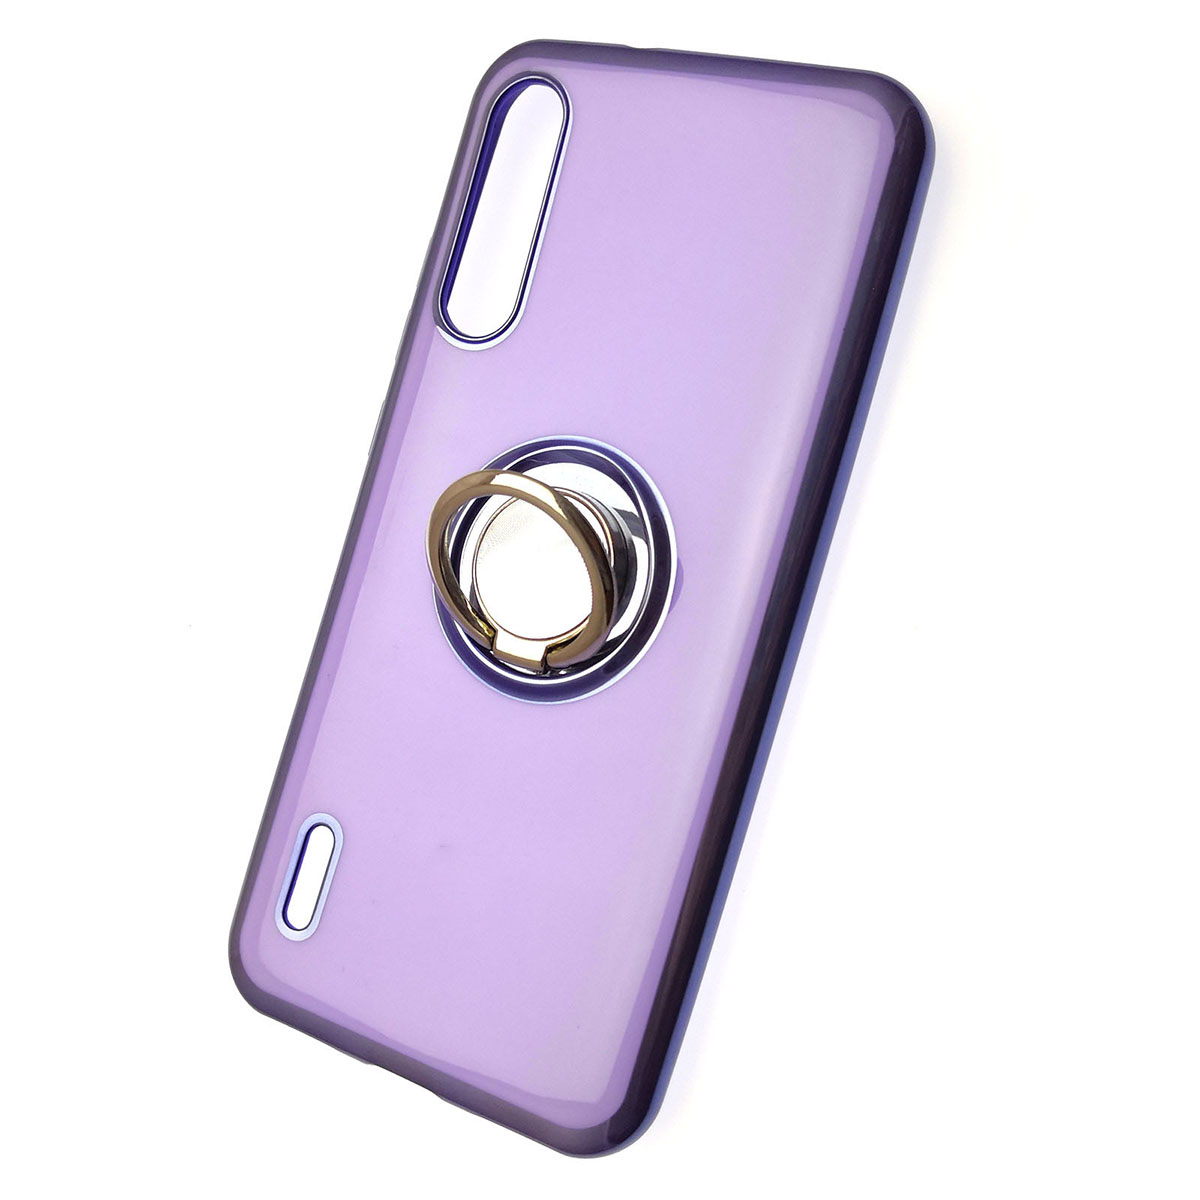 Чехол накладка для XIAOMI Mi A3, Mi CC9E, силикон, кольцо держатель, цвет фиолетовый.